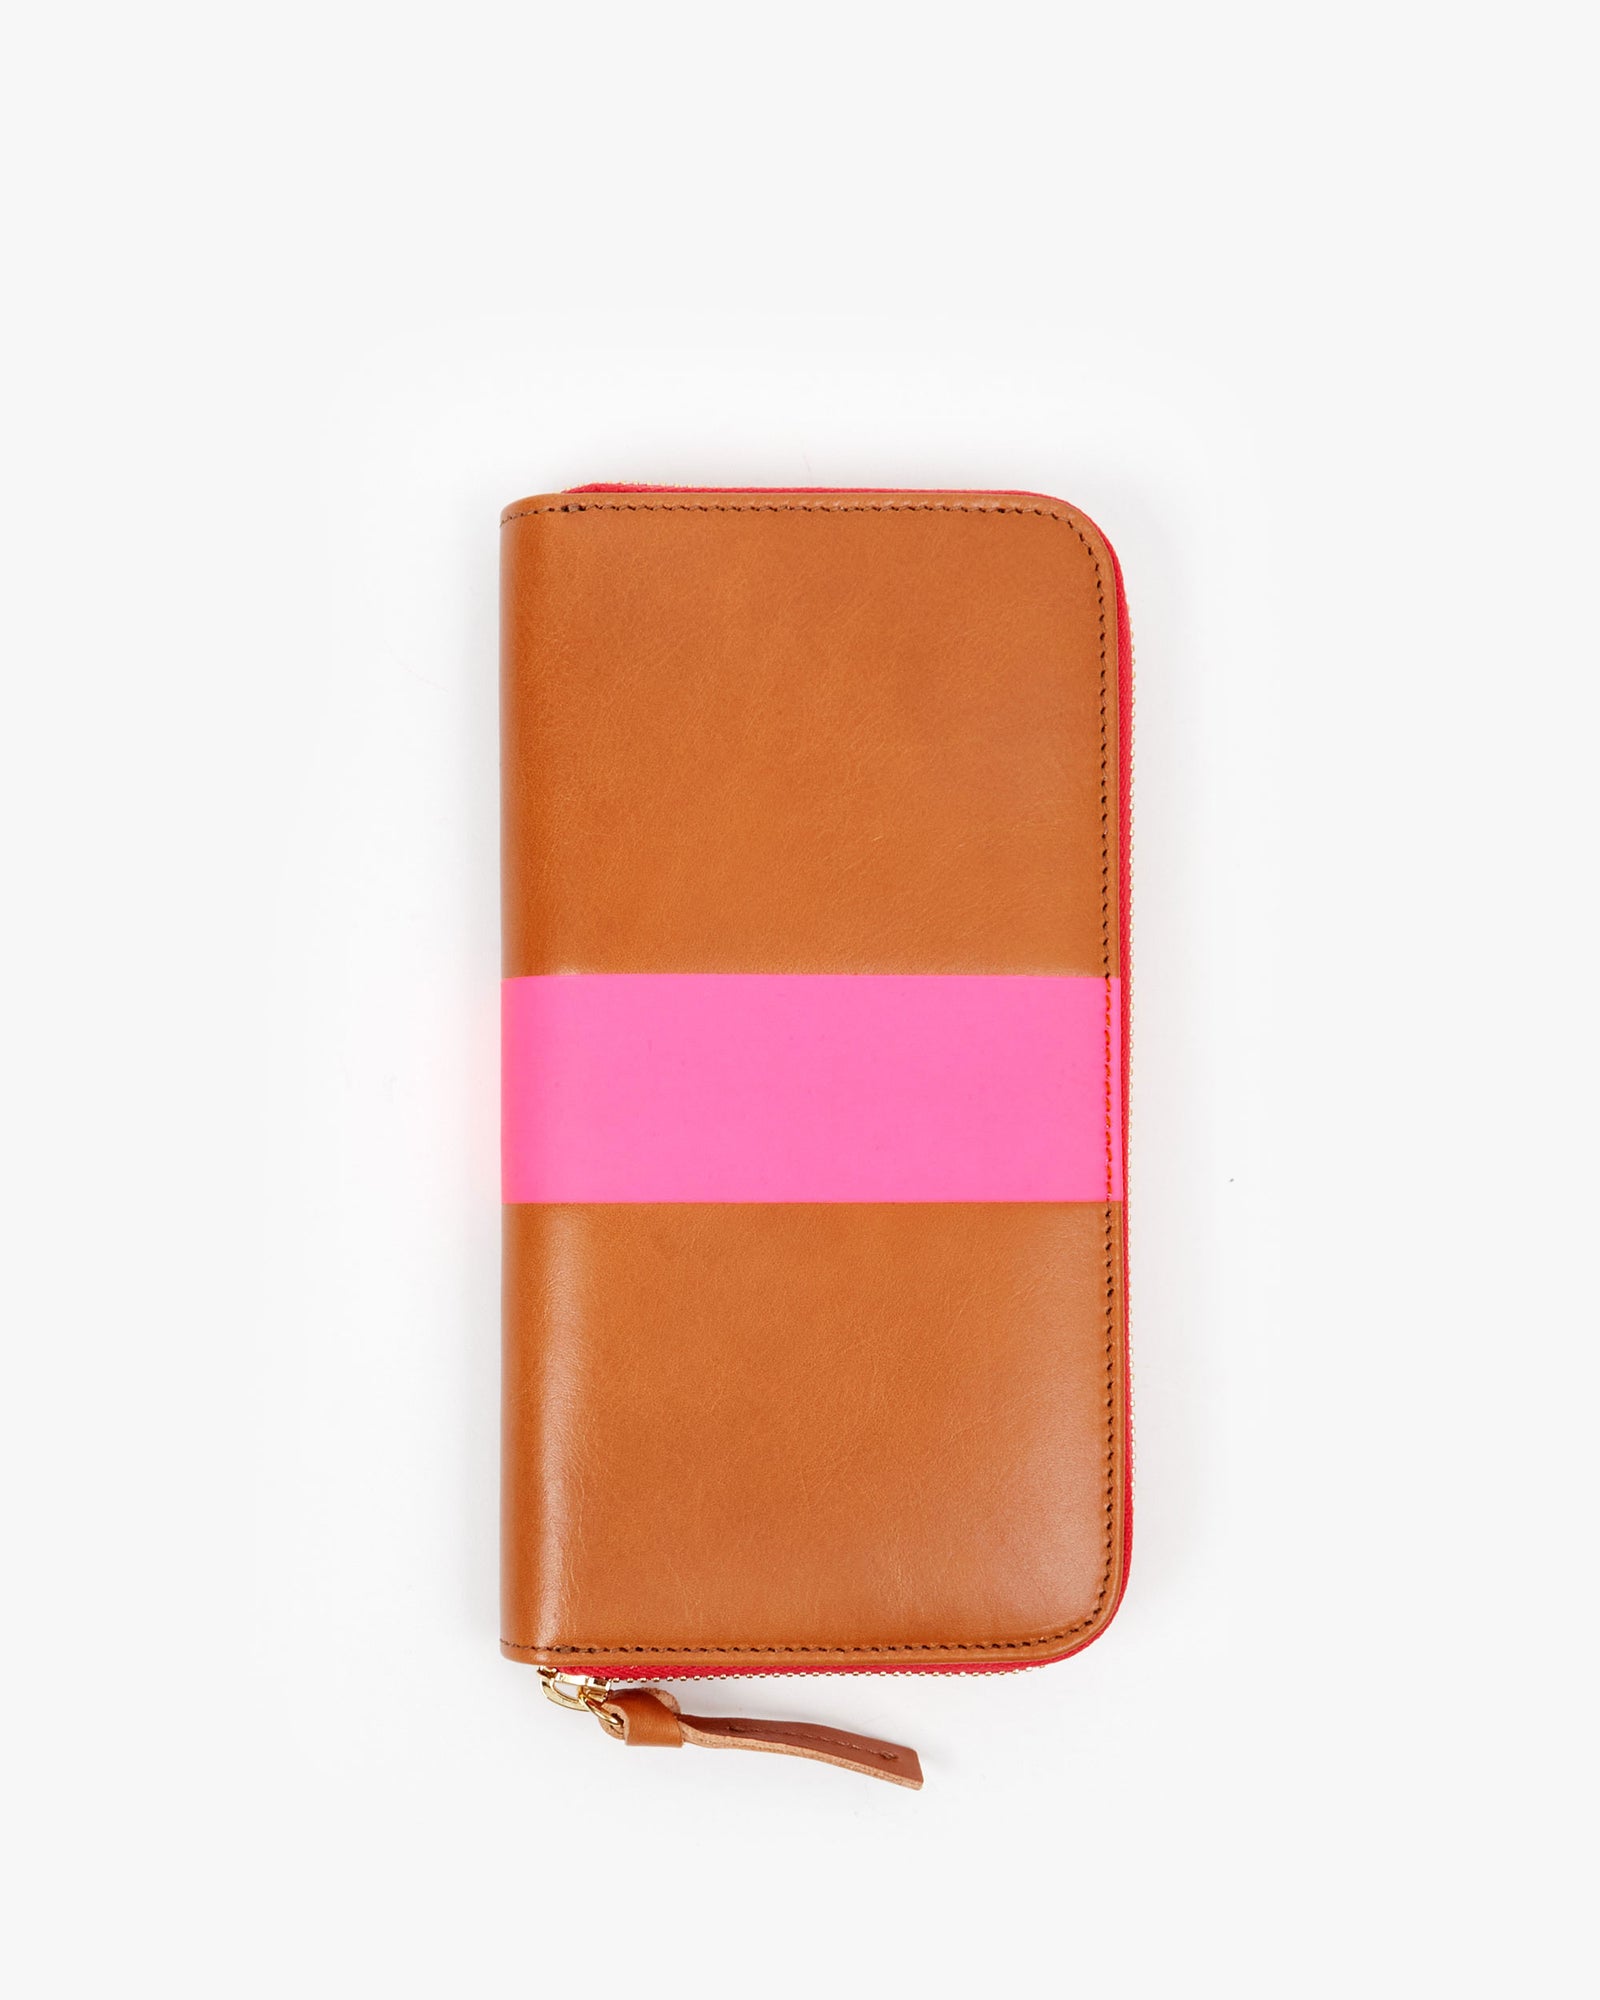 Cuoio w/ Neon Pink Stripe Zip Wallet on its side